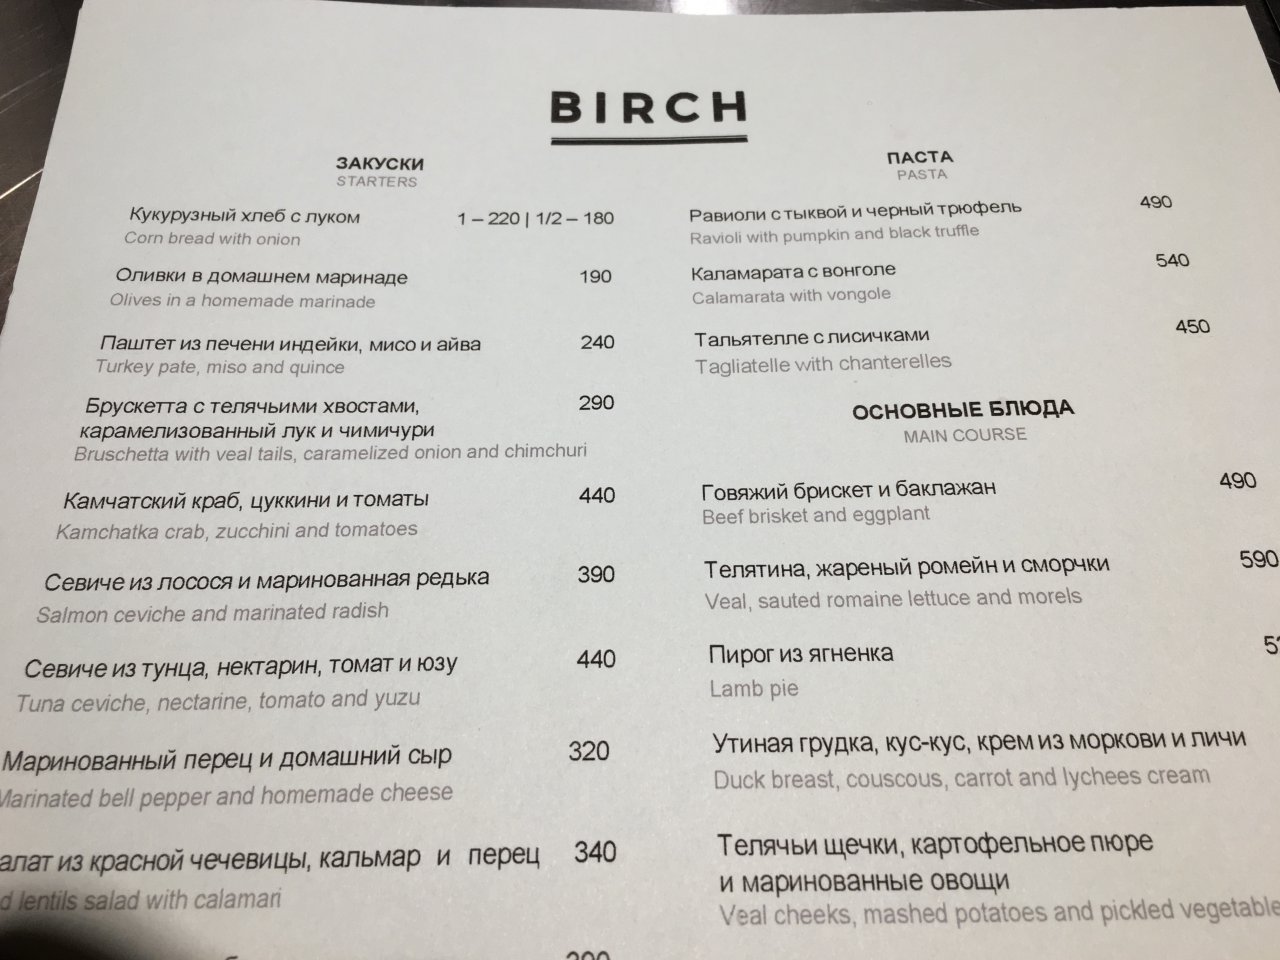 Birch Restaurant Menu-St Petersburg